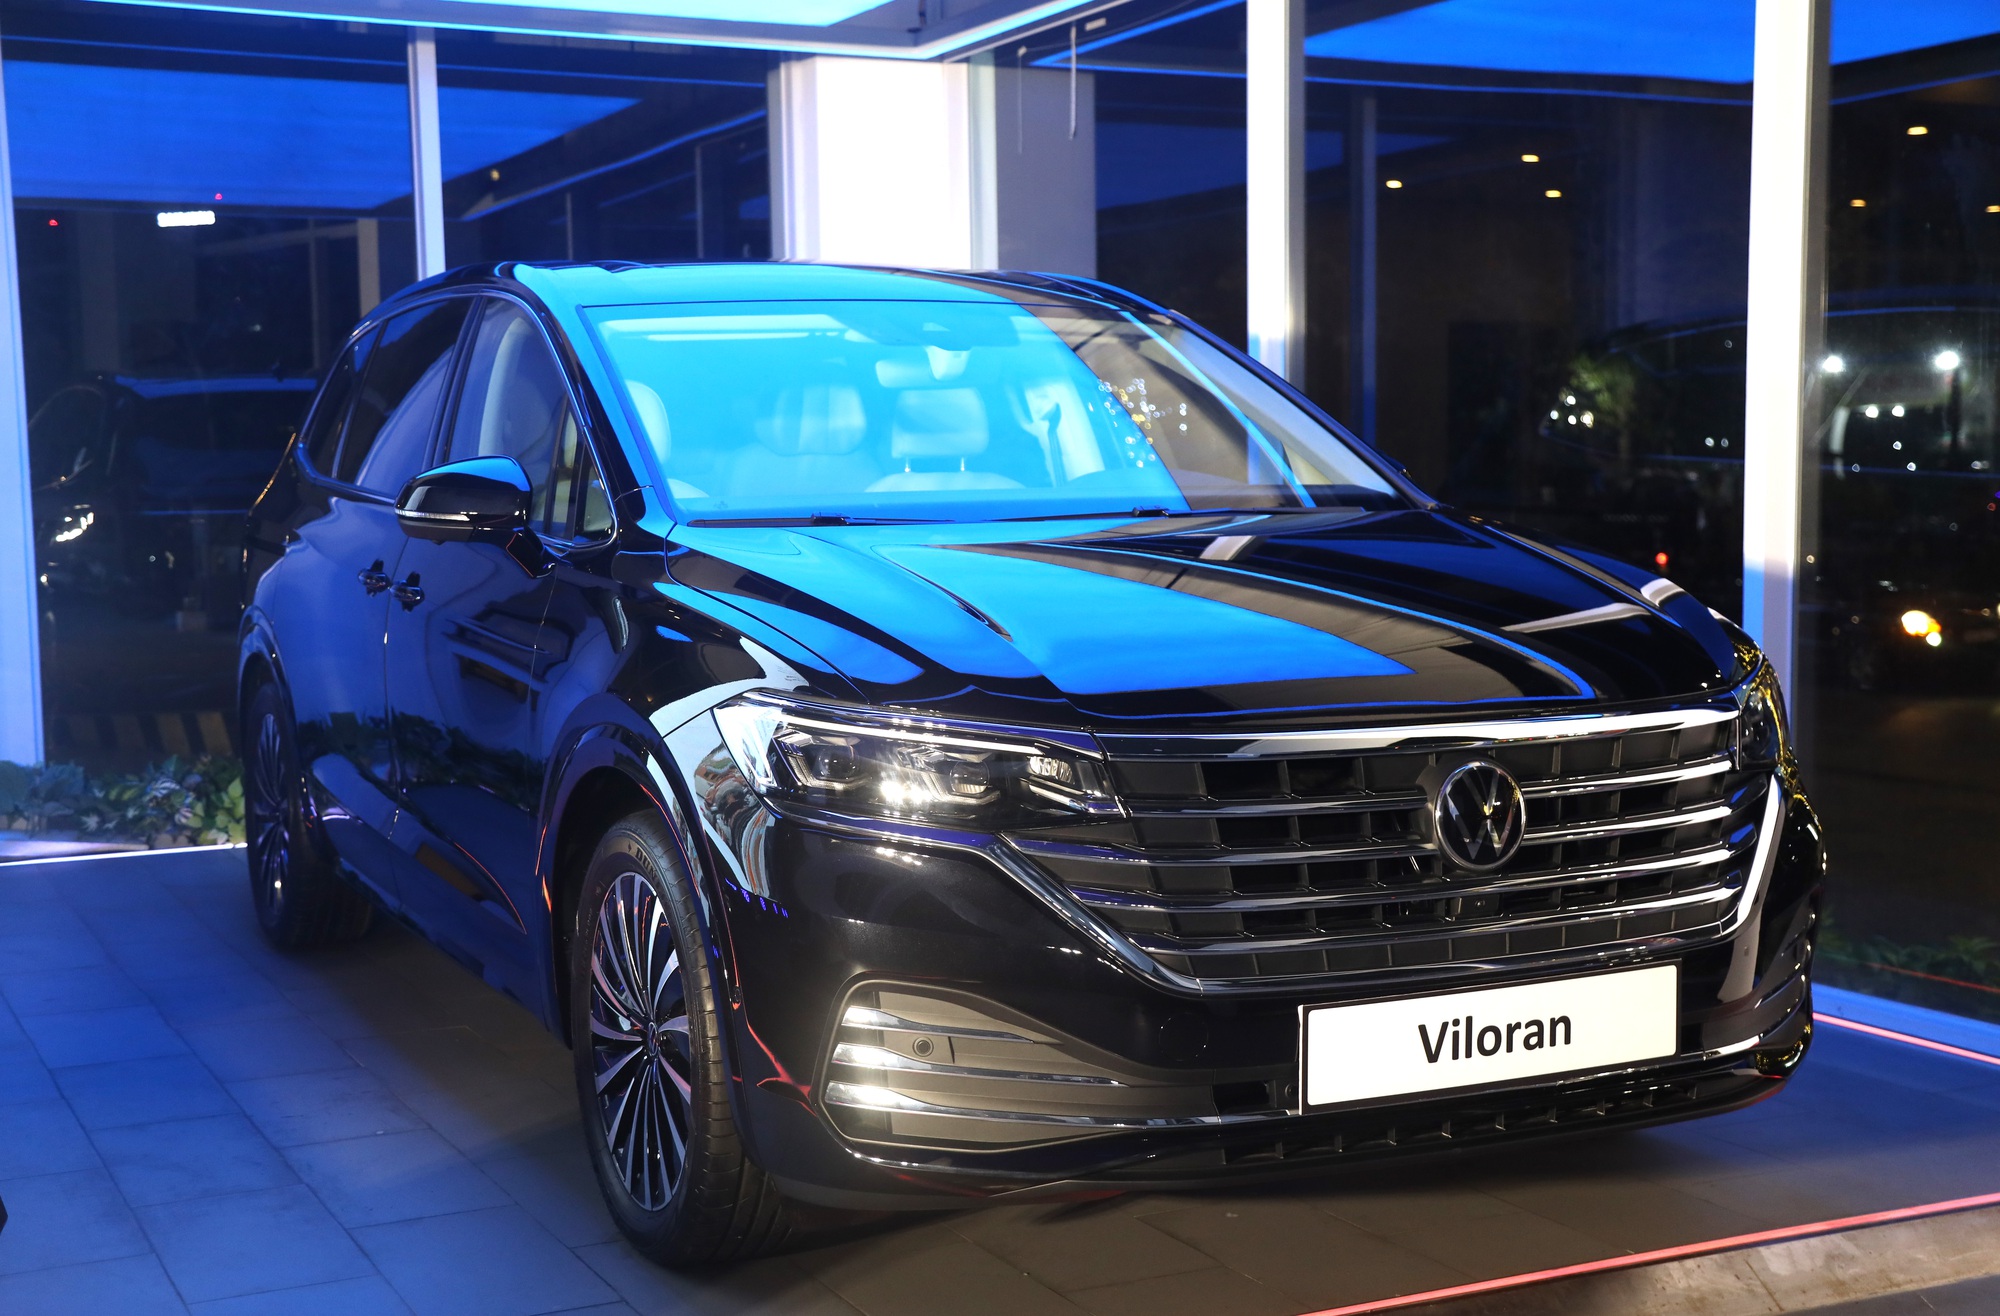 Volkswagen Viloran chính thức ra mắt tại Hà Nội- Ảnh 1.